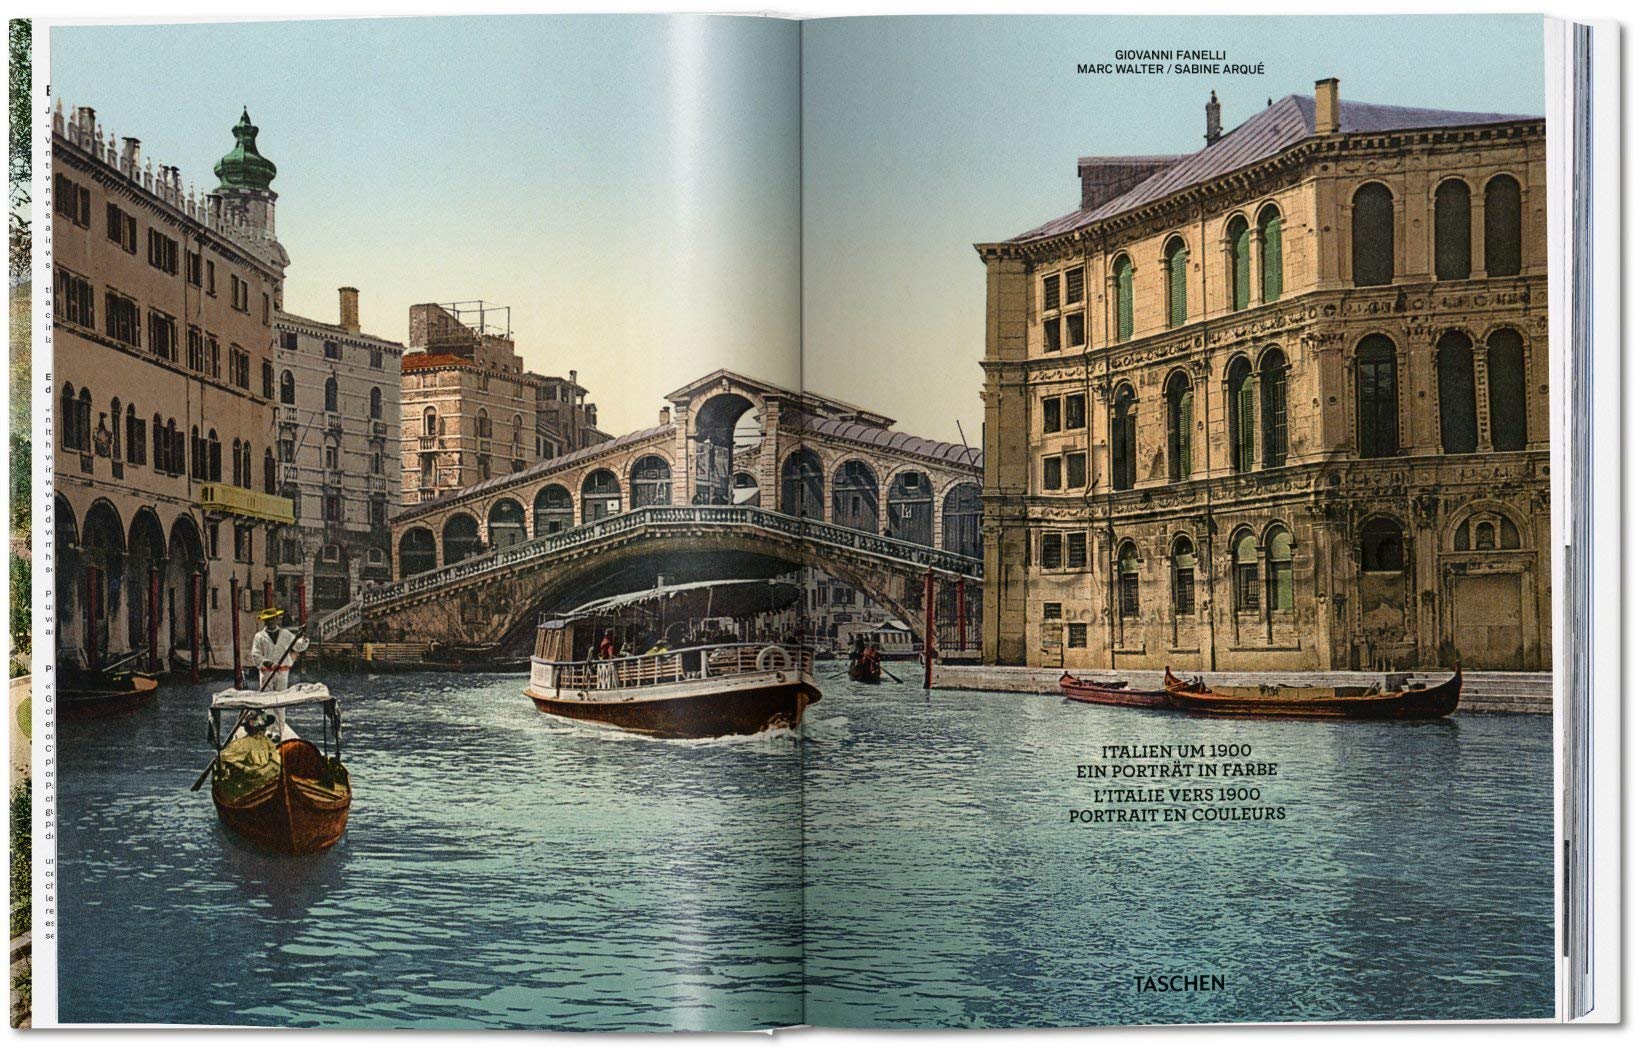 Italy around 1900 | Giovanni Fanelli